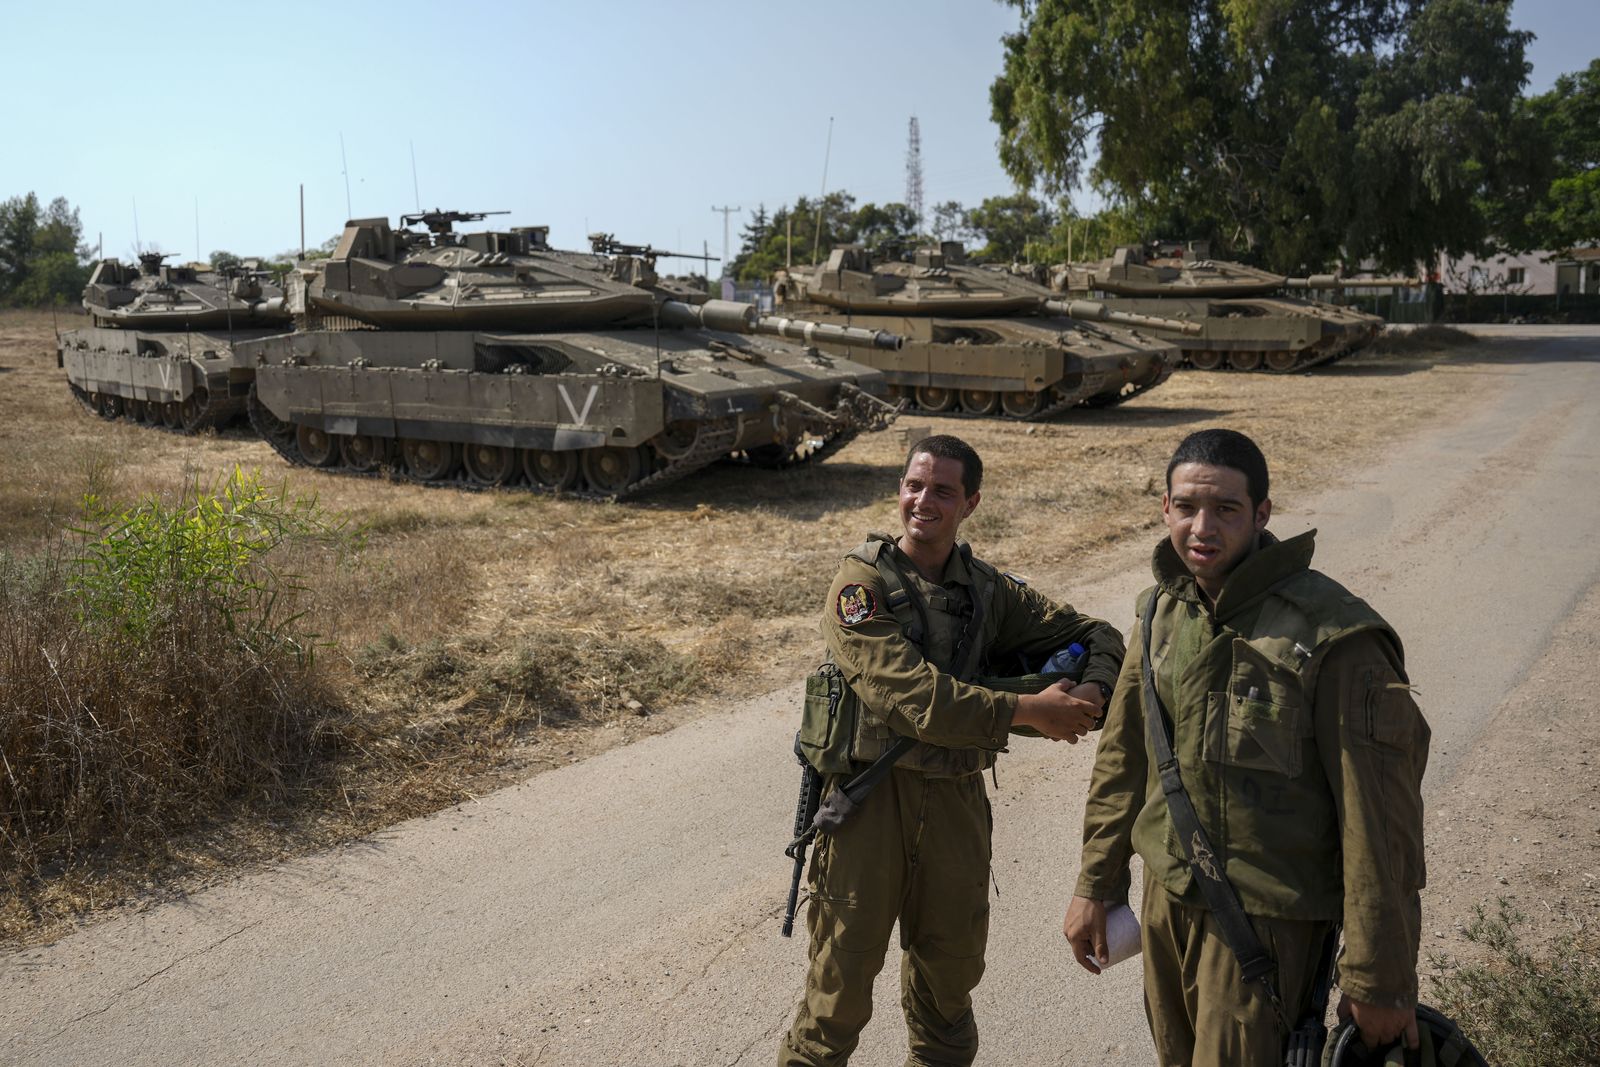 Обстановка в израиле сегодня последние новости. Танки Палестины. Израильские танки. Израильские танки в Палестине. Меркава танк Палестина.